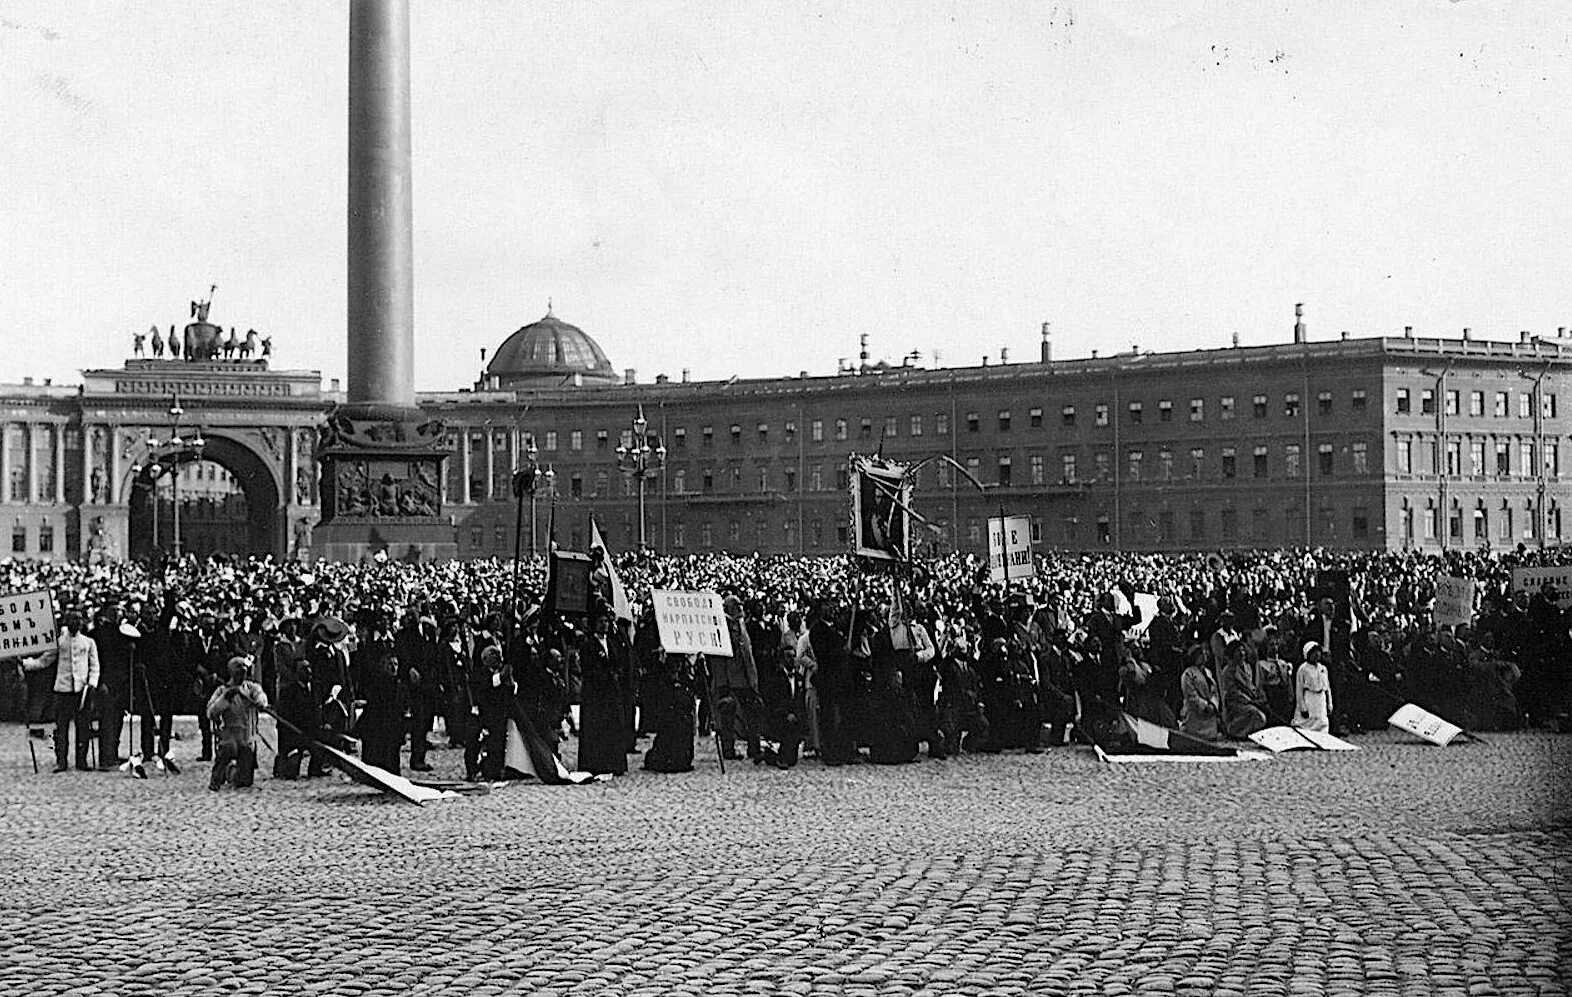 Дворцовая площадь в Санкт-Петербурге 1917. Дворцовая площадь объявление войны 1914.